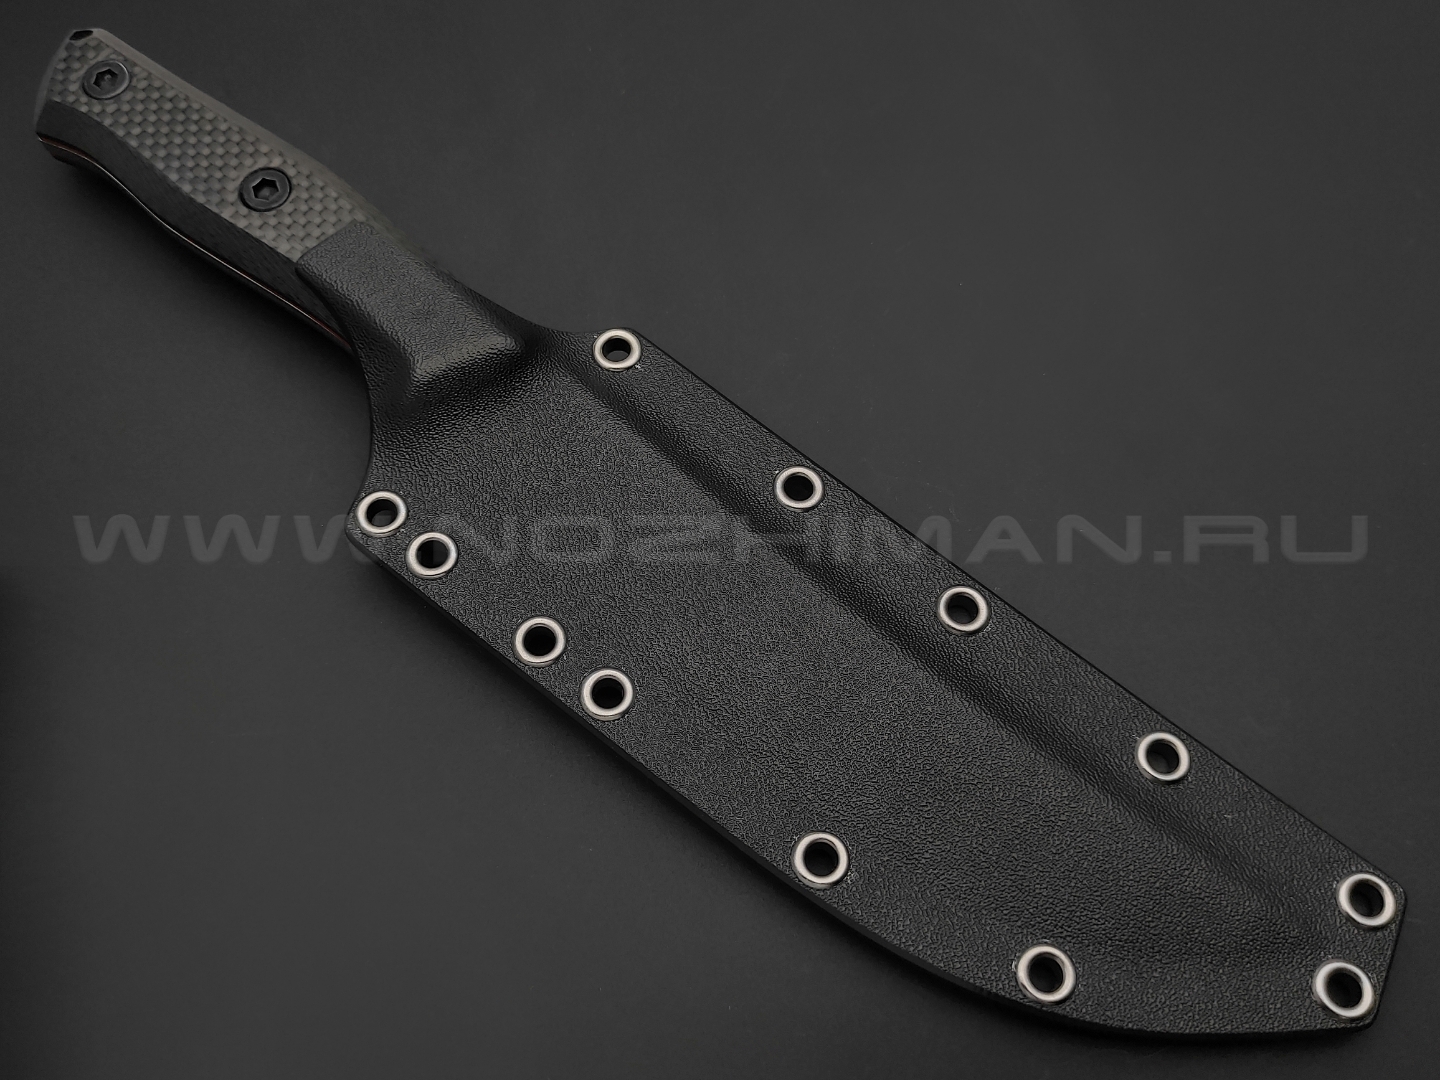 Волчий Век нож Тезис Tactical Edition сталь Elmax WA satin, рукоять Carbon fiber, G10 red